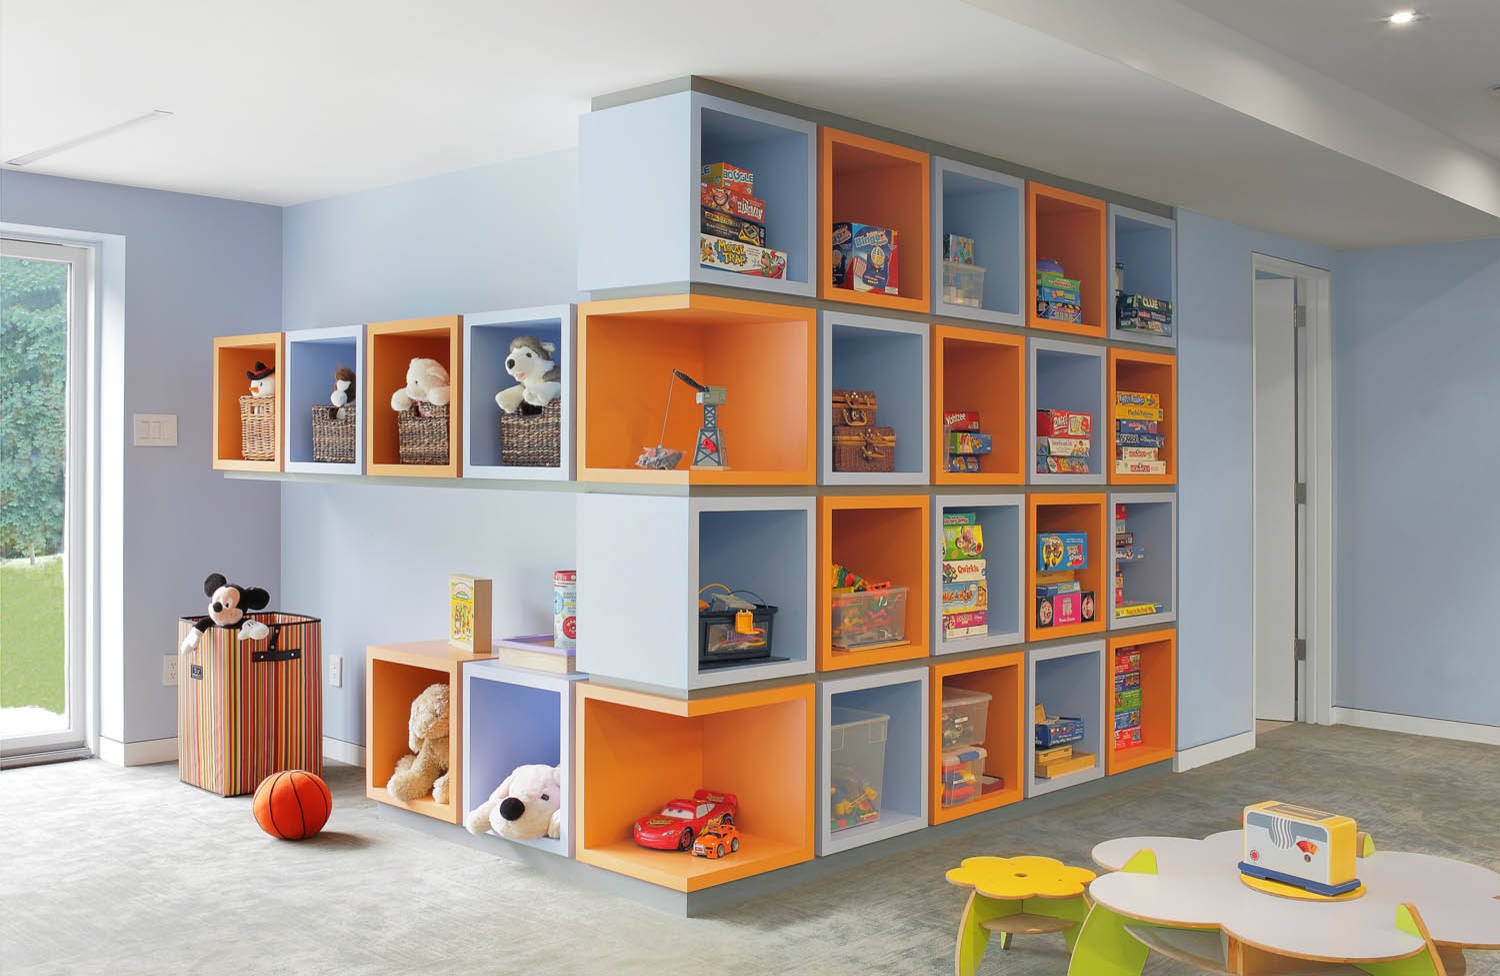 Shelf design